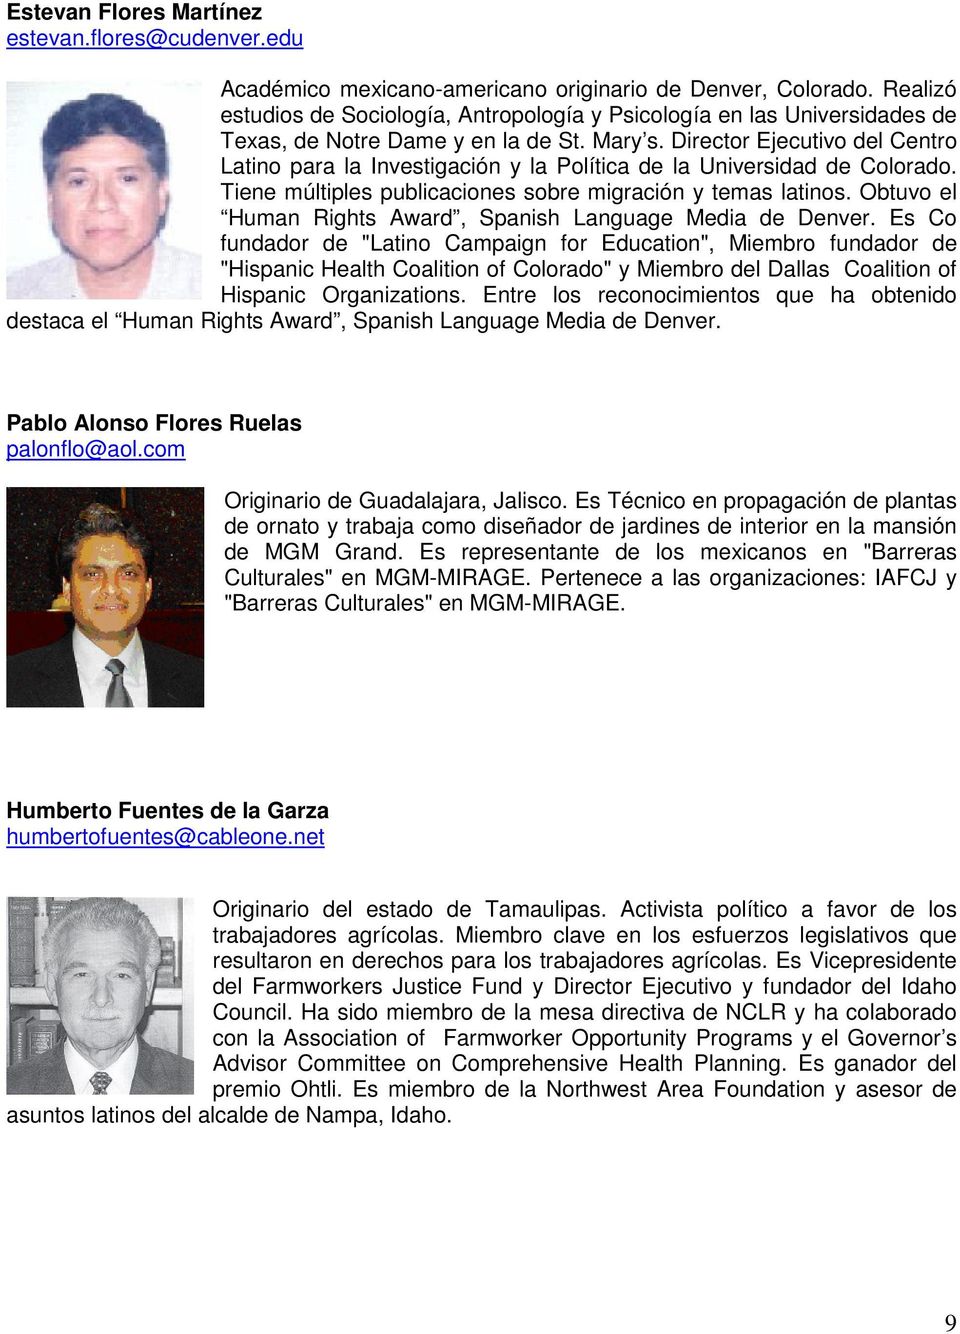 Director Ejecutivo del Centro Latino para la Investigación y la Política de la Universidad de Colorado. Tiene múltiples publicaciones sobre migración y temas latinos.